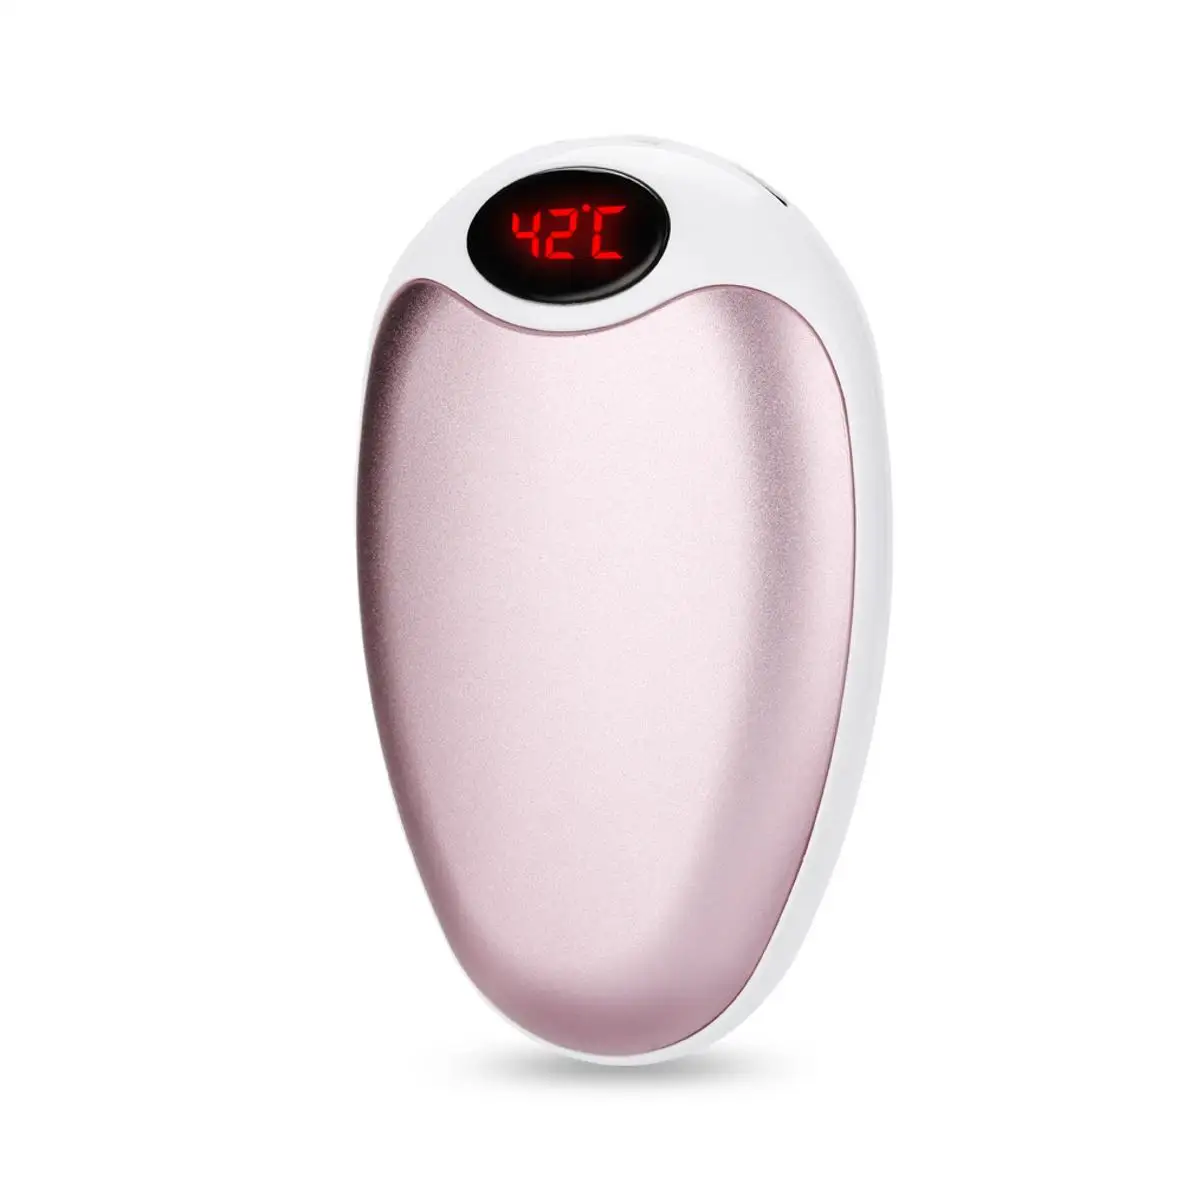 5200 мАч USB карманный обогреватель грелка для рук портативный мобильный источник питания температура цифровой дисплей двойной нагрев алюминиевый сплав - Цвет: Розовый